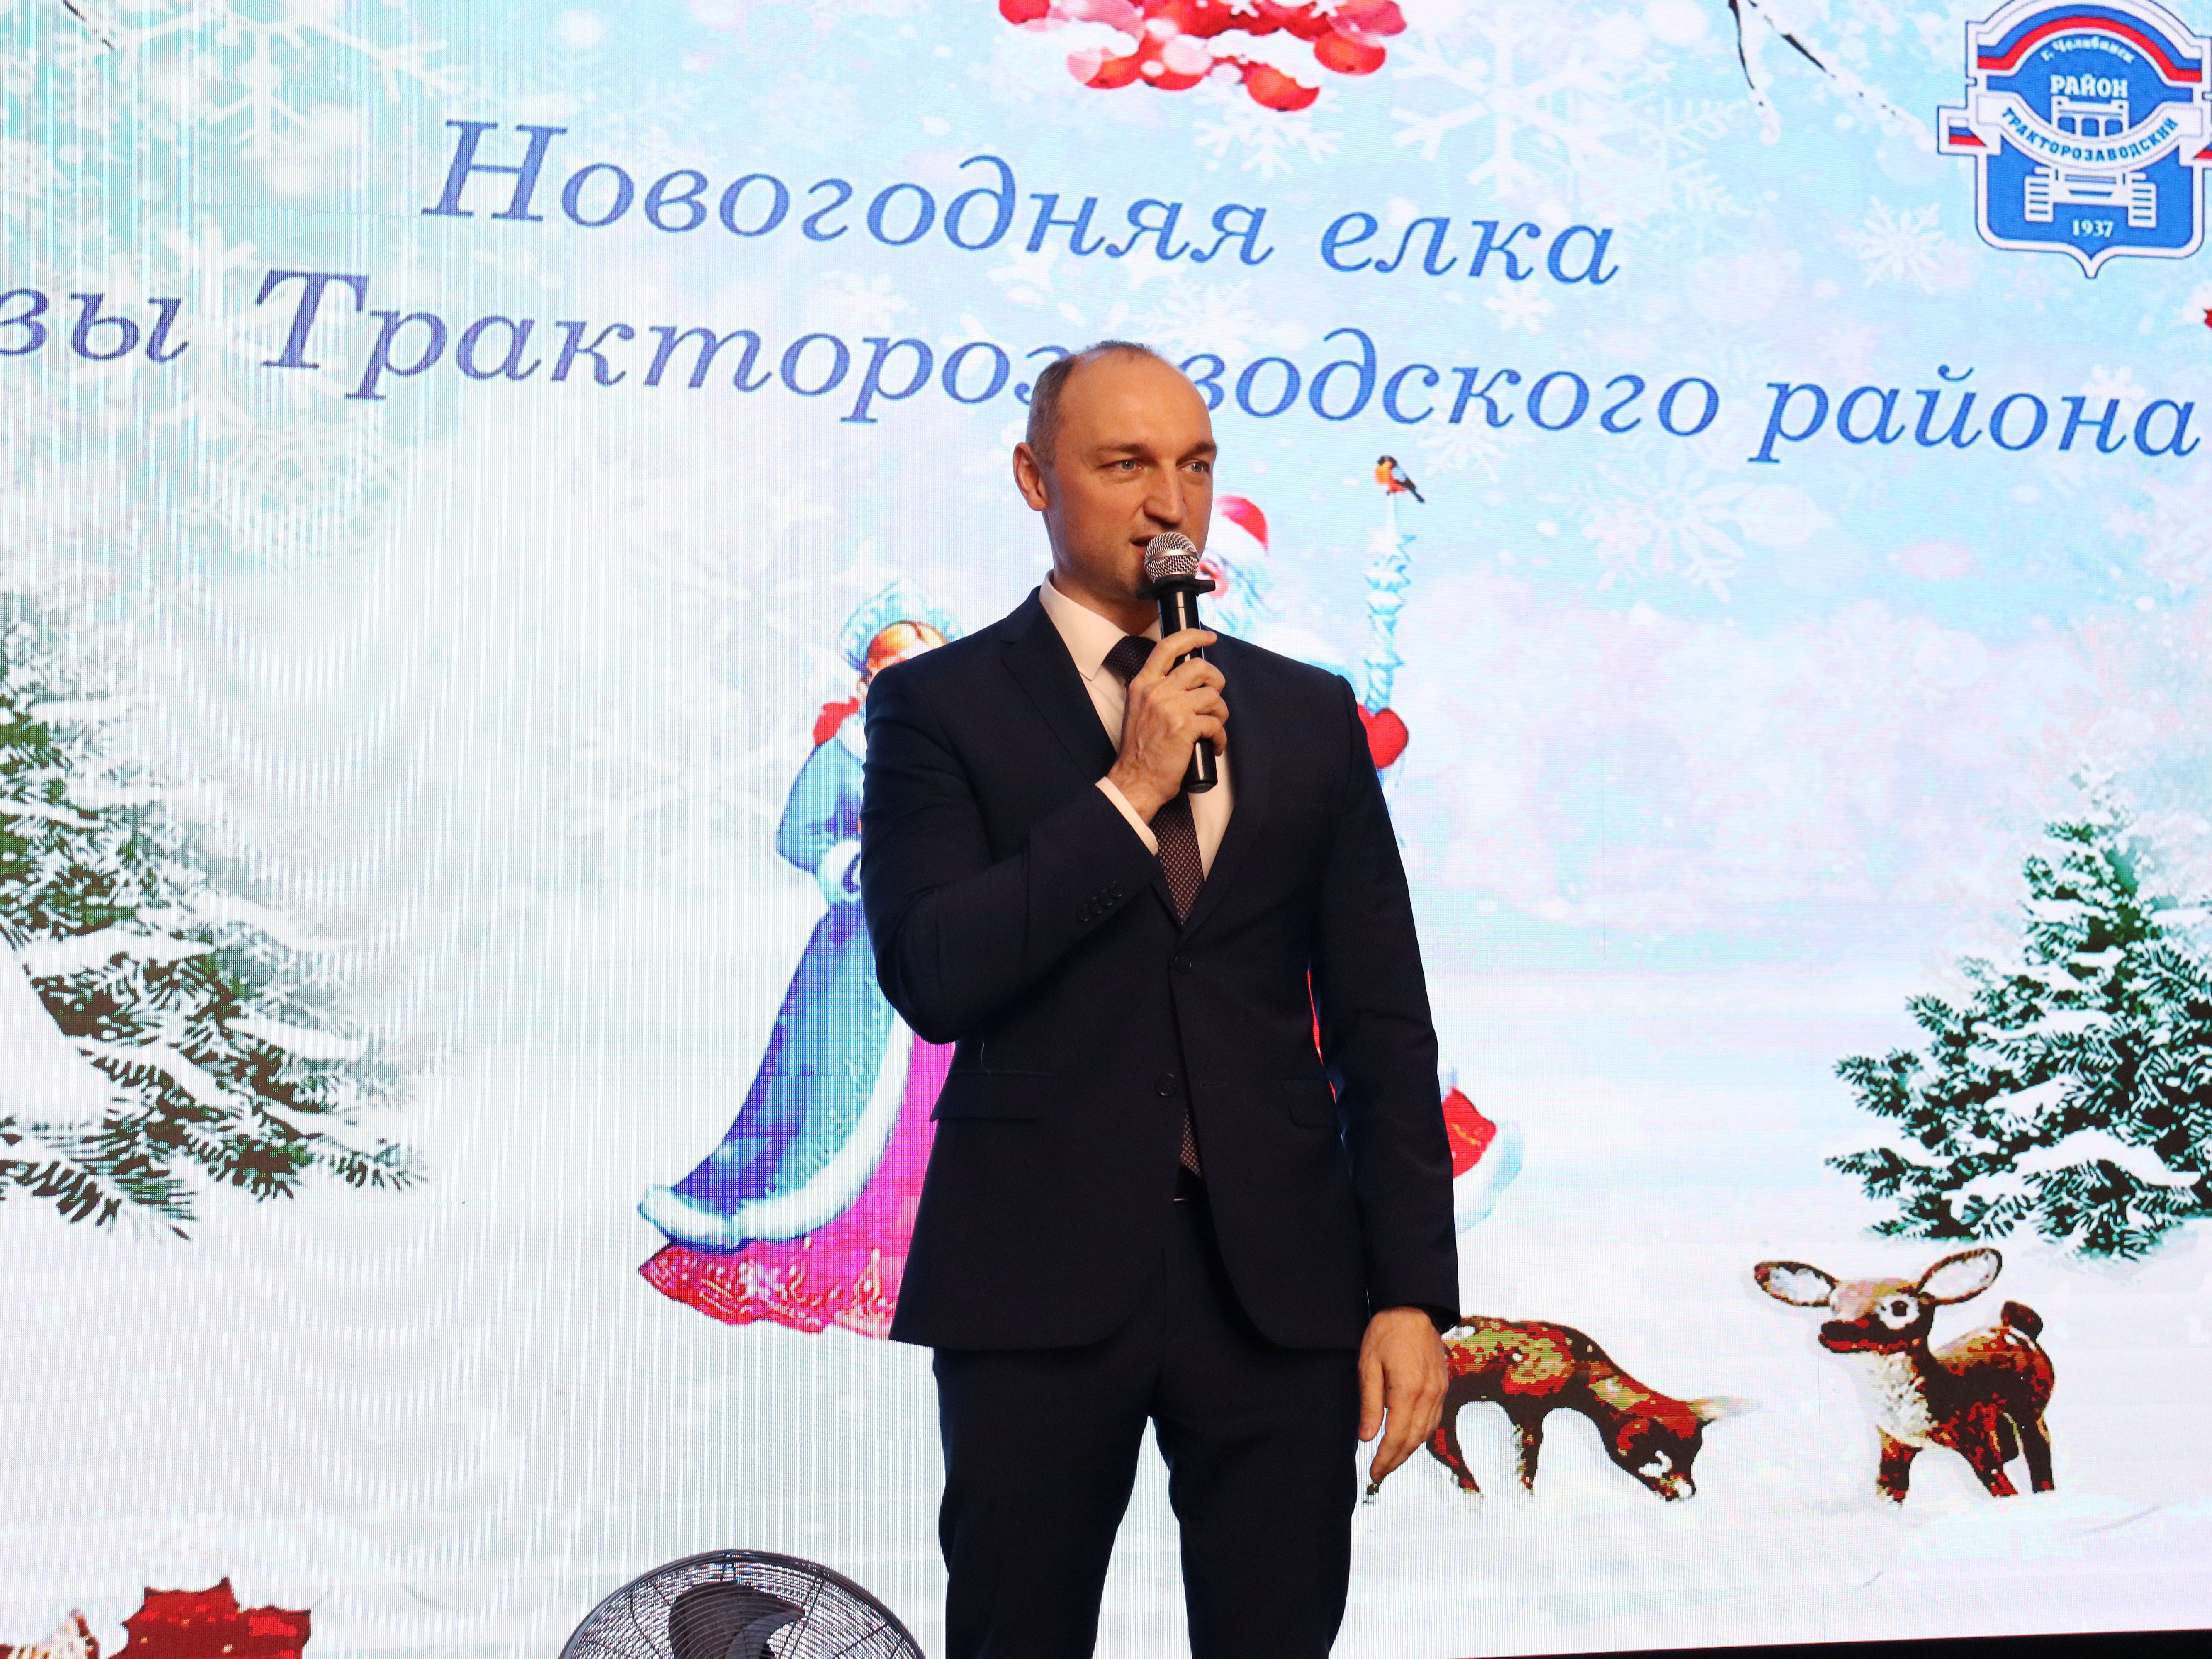 Состоялось праздничное мероприятие – Новогодняя ёлка Главы Тракторозаводского района